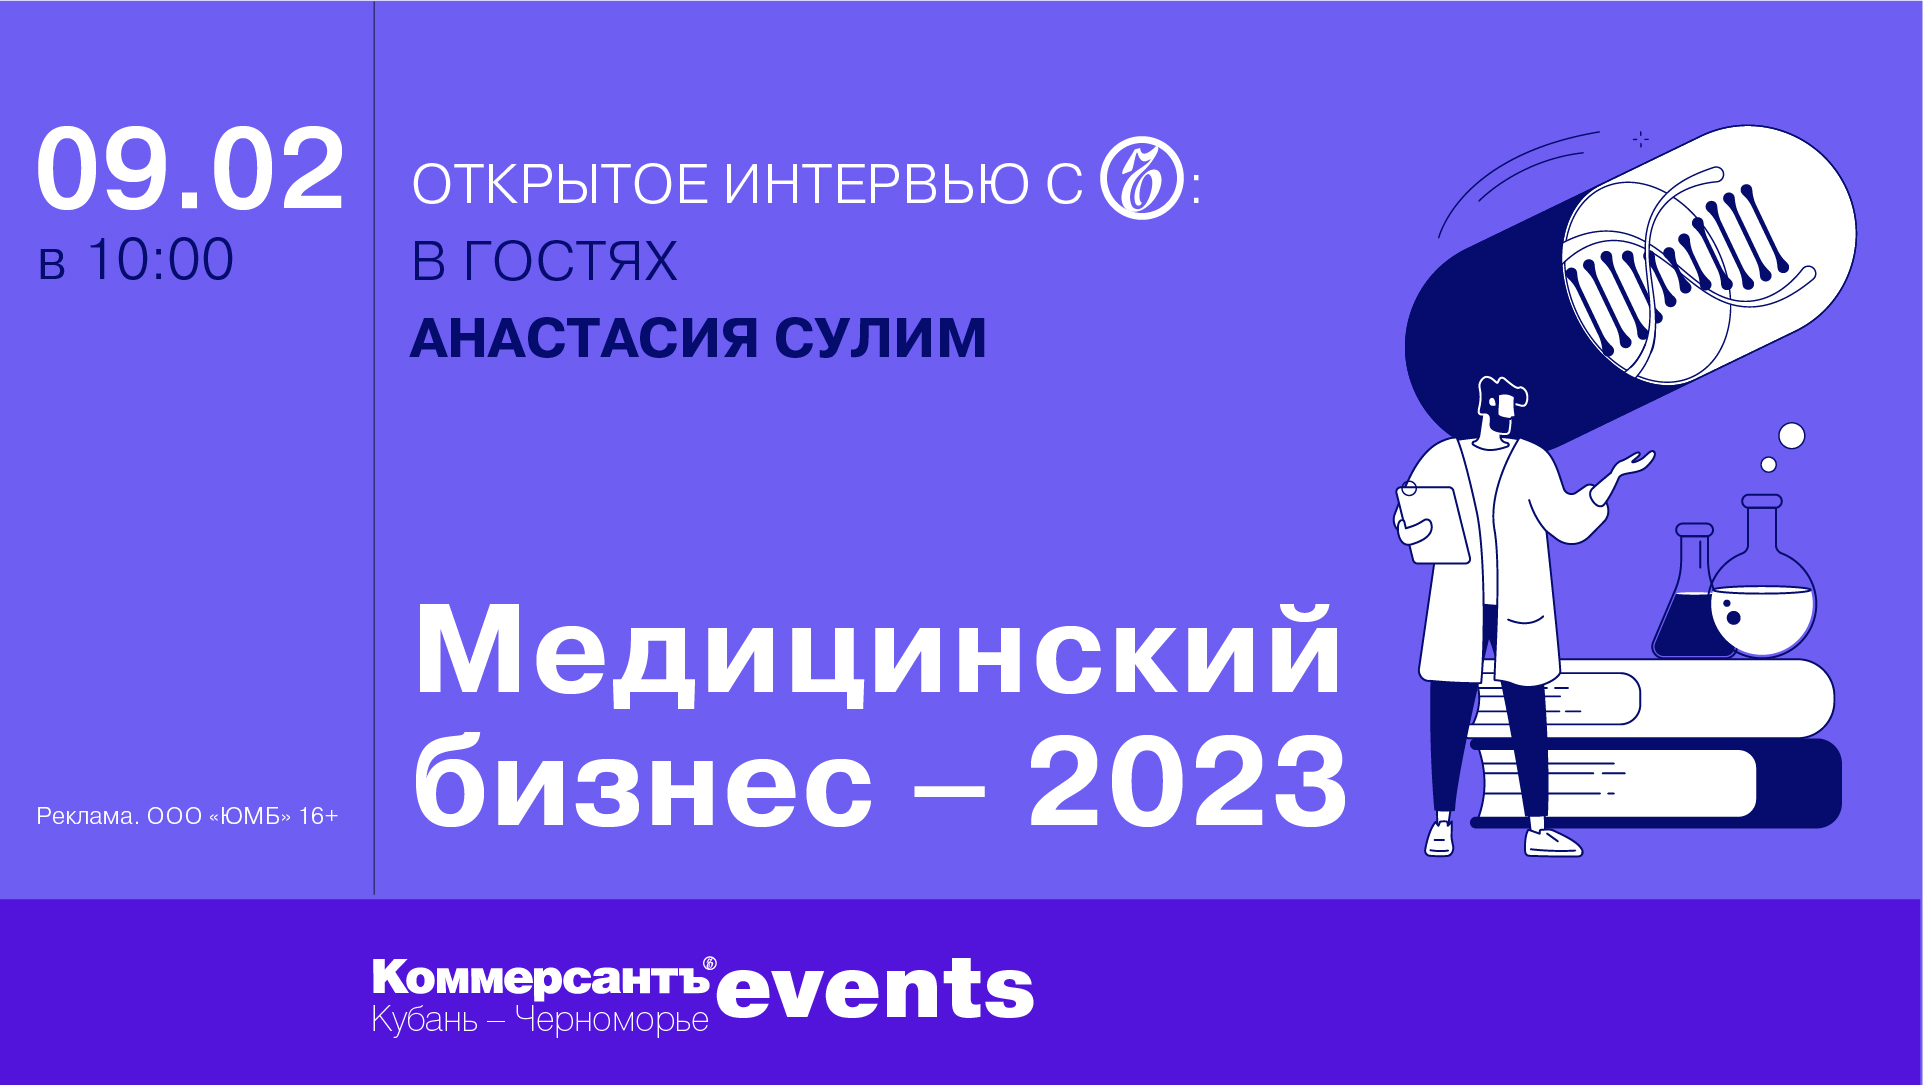 Медицинский бизнес – 2023: главные тренды и перспективы развития